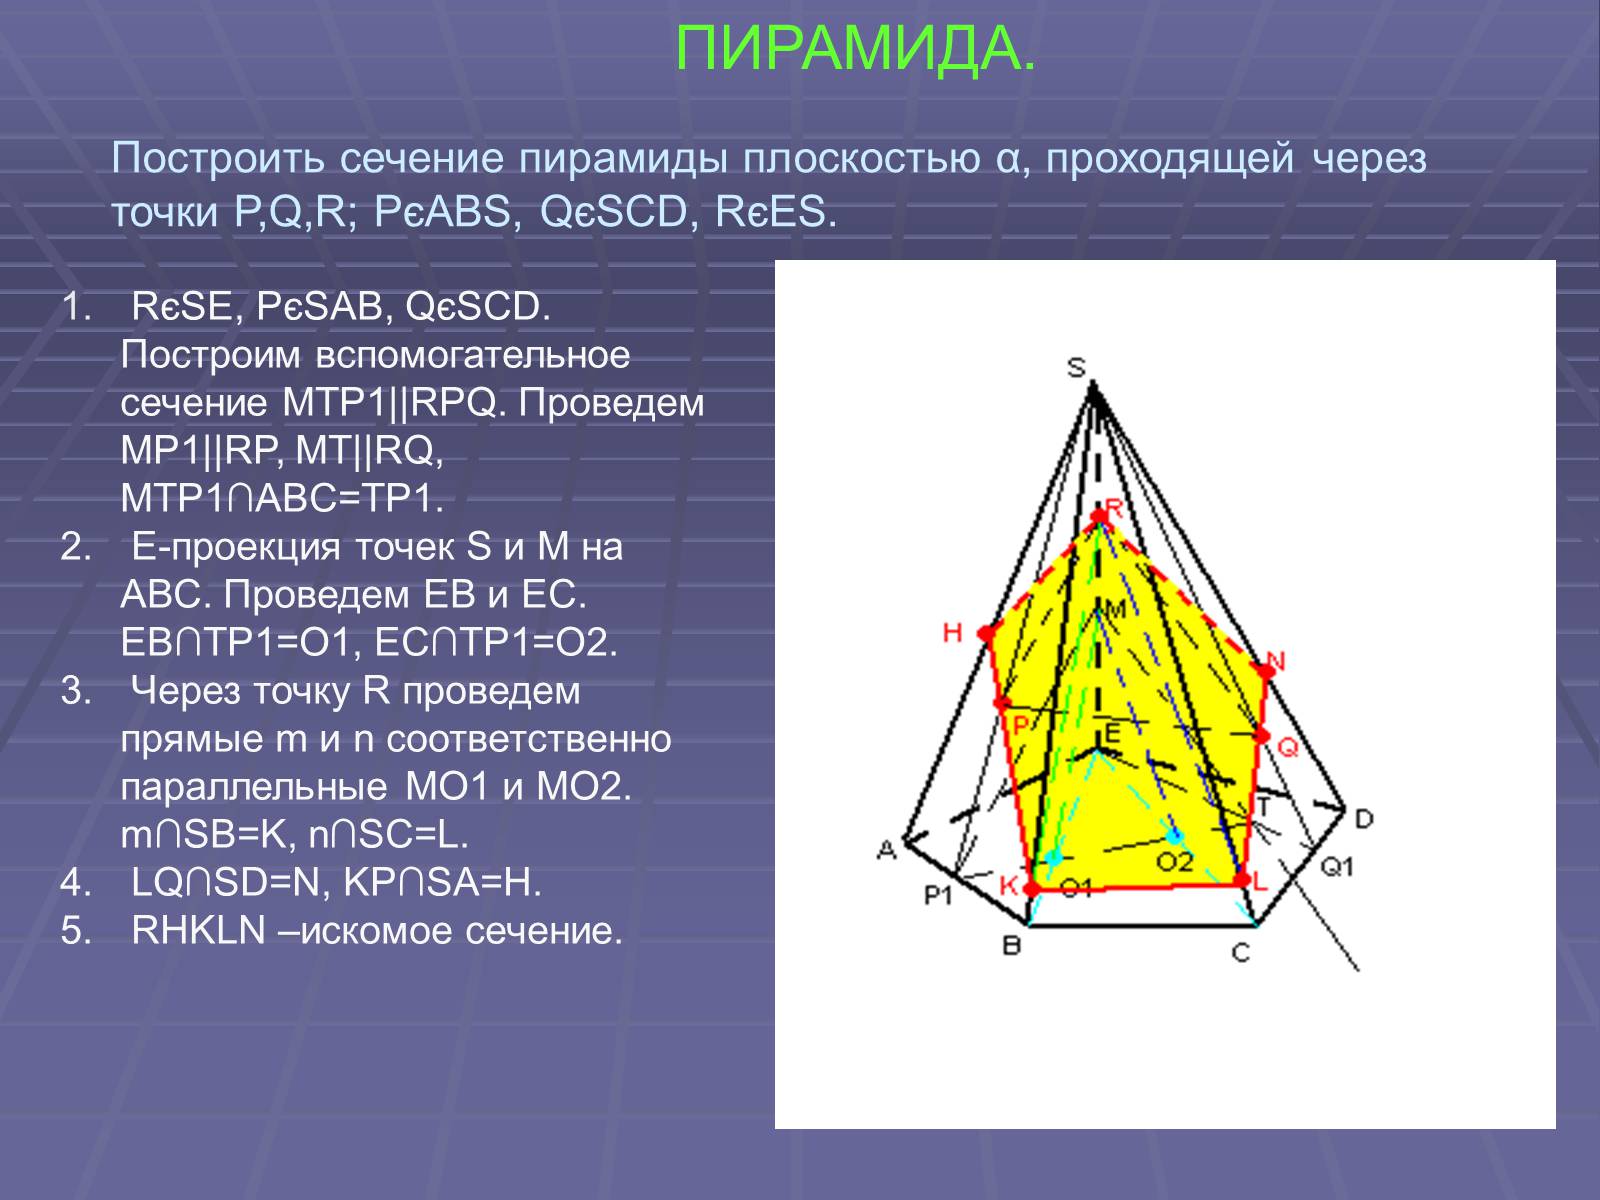 Сечения правильной треугольной пирамиды